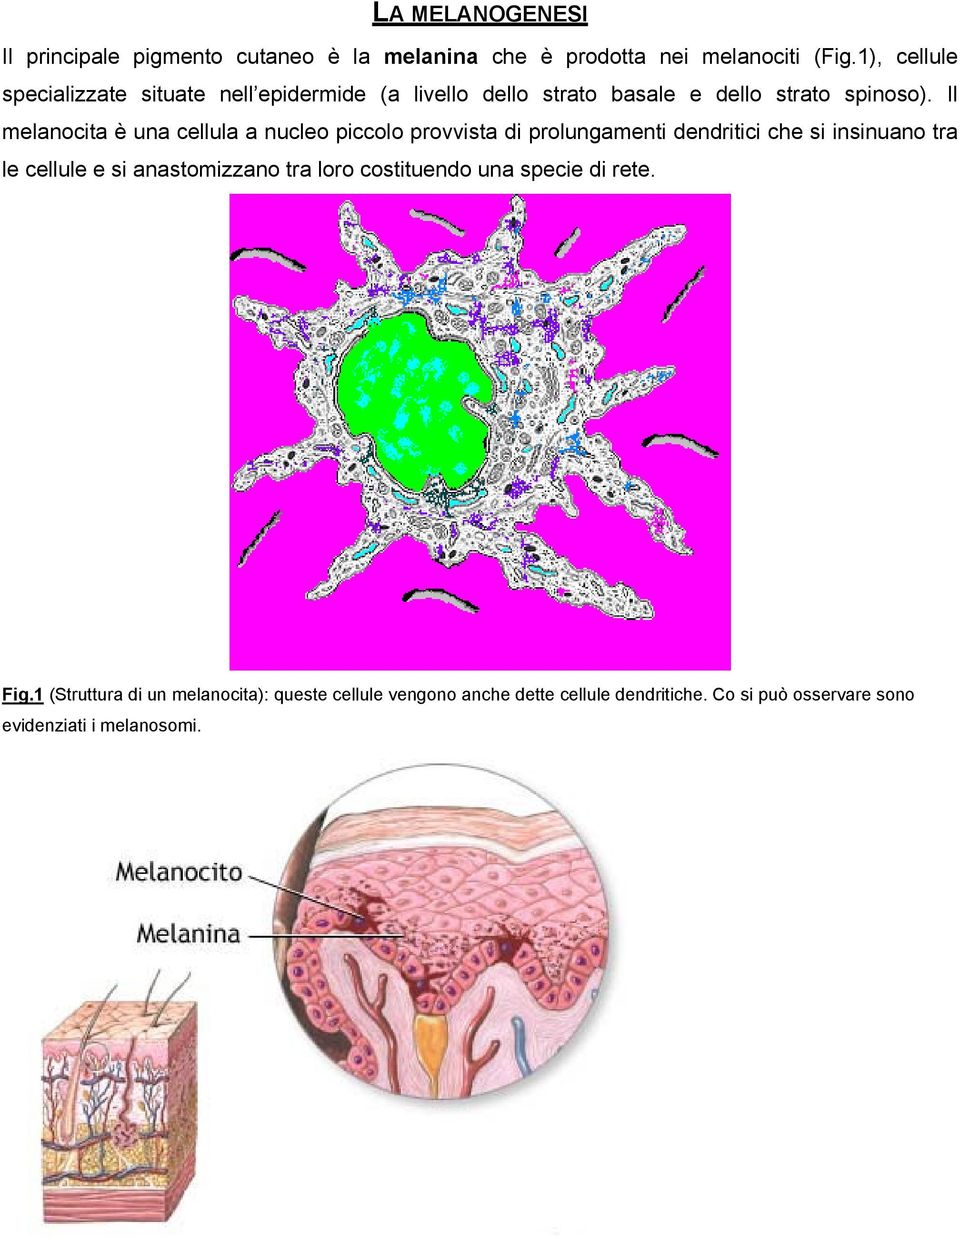 Il melanocita è una cellula a nucleo piccolo provvista di prolungamenti dendritici che si insinuano tra le cellule e si